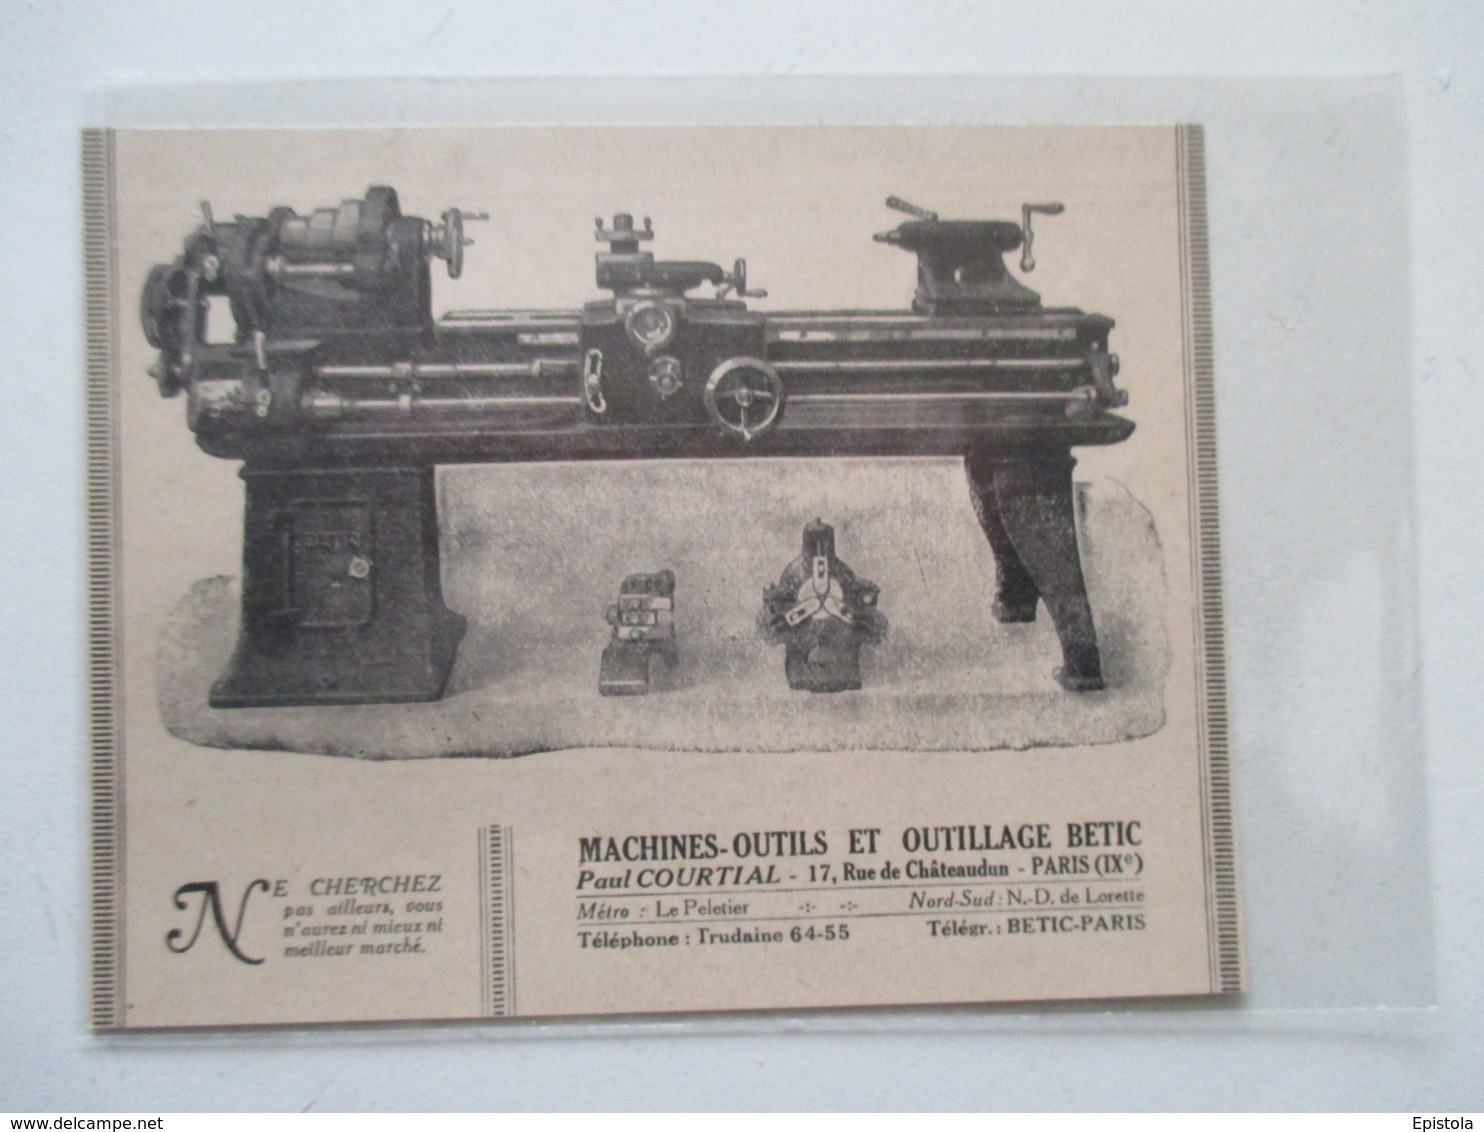 Machine Outil - Tour à Verniers BETIC     - Coupure De Presse De 1921 - Other Apparatus